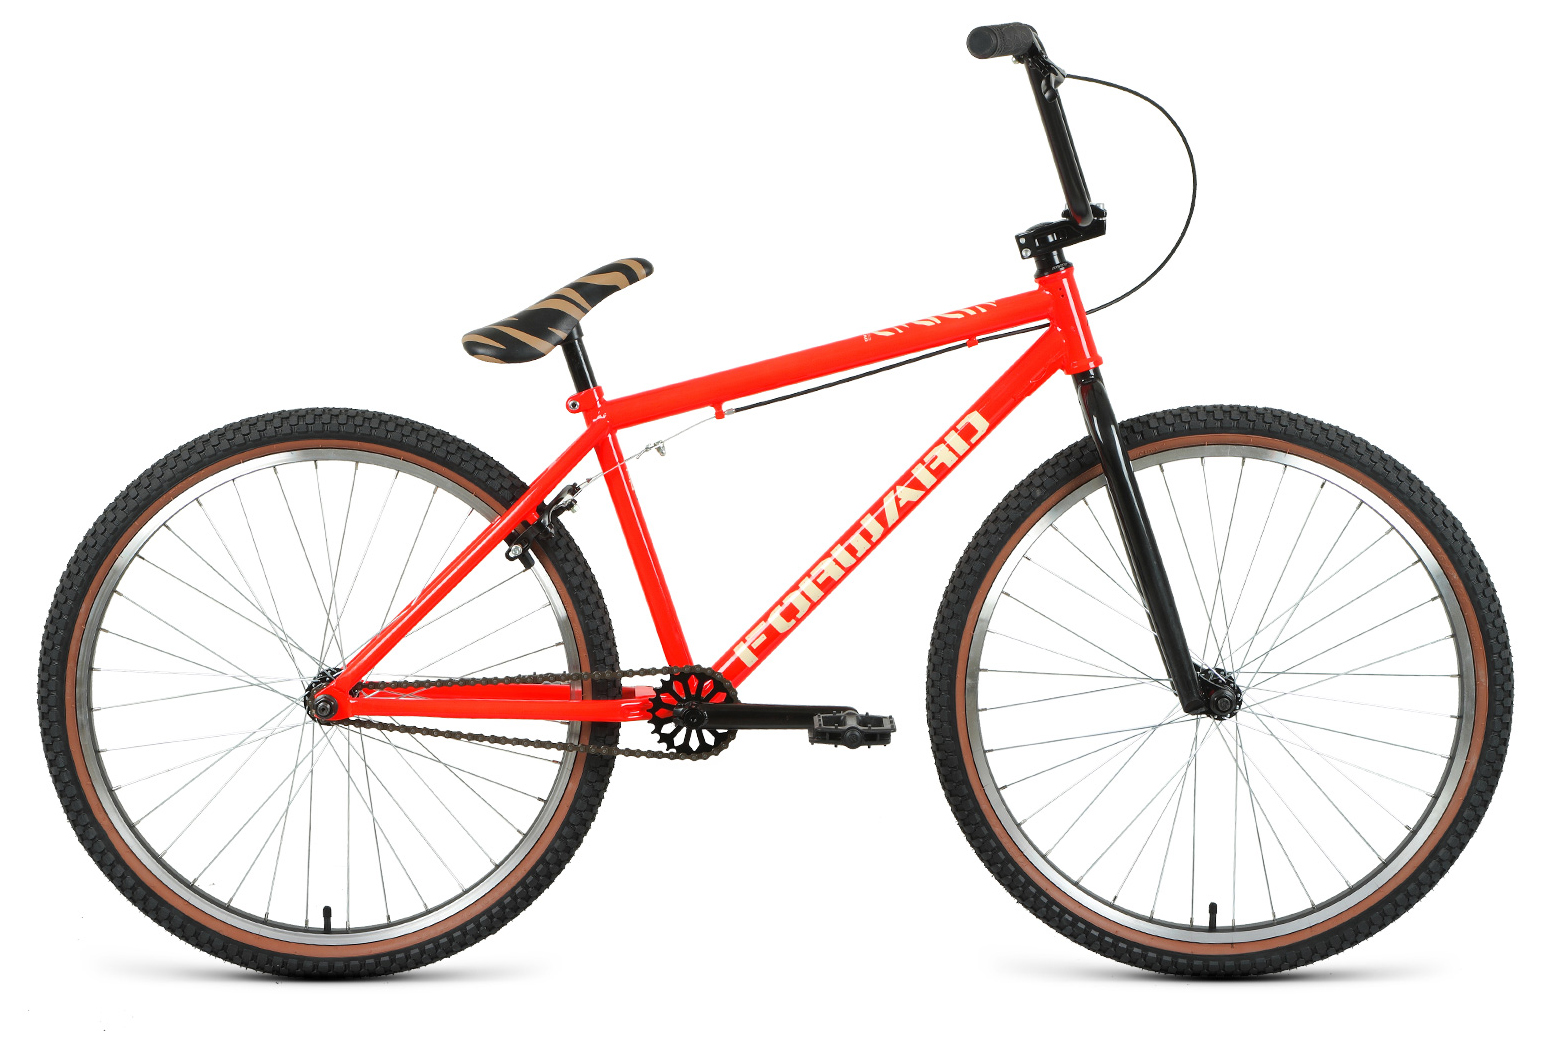  Отзывы о Велосипеде BMX Forward Zigzag 26 2021